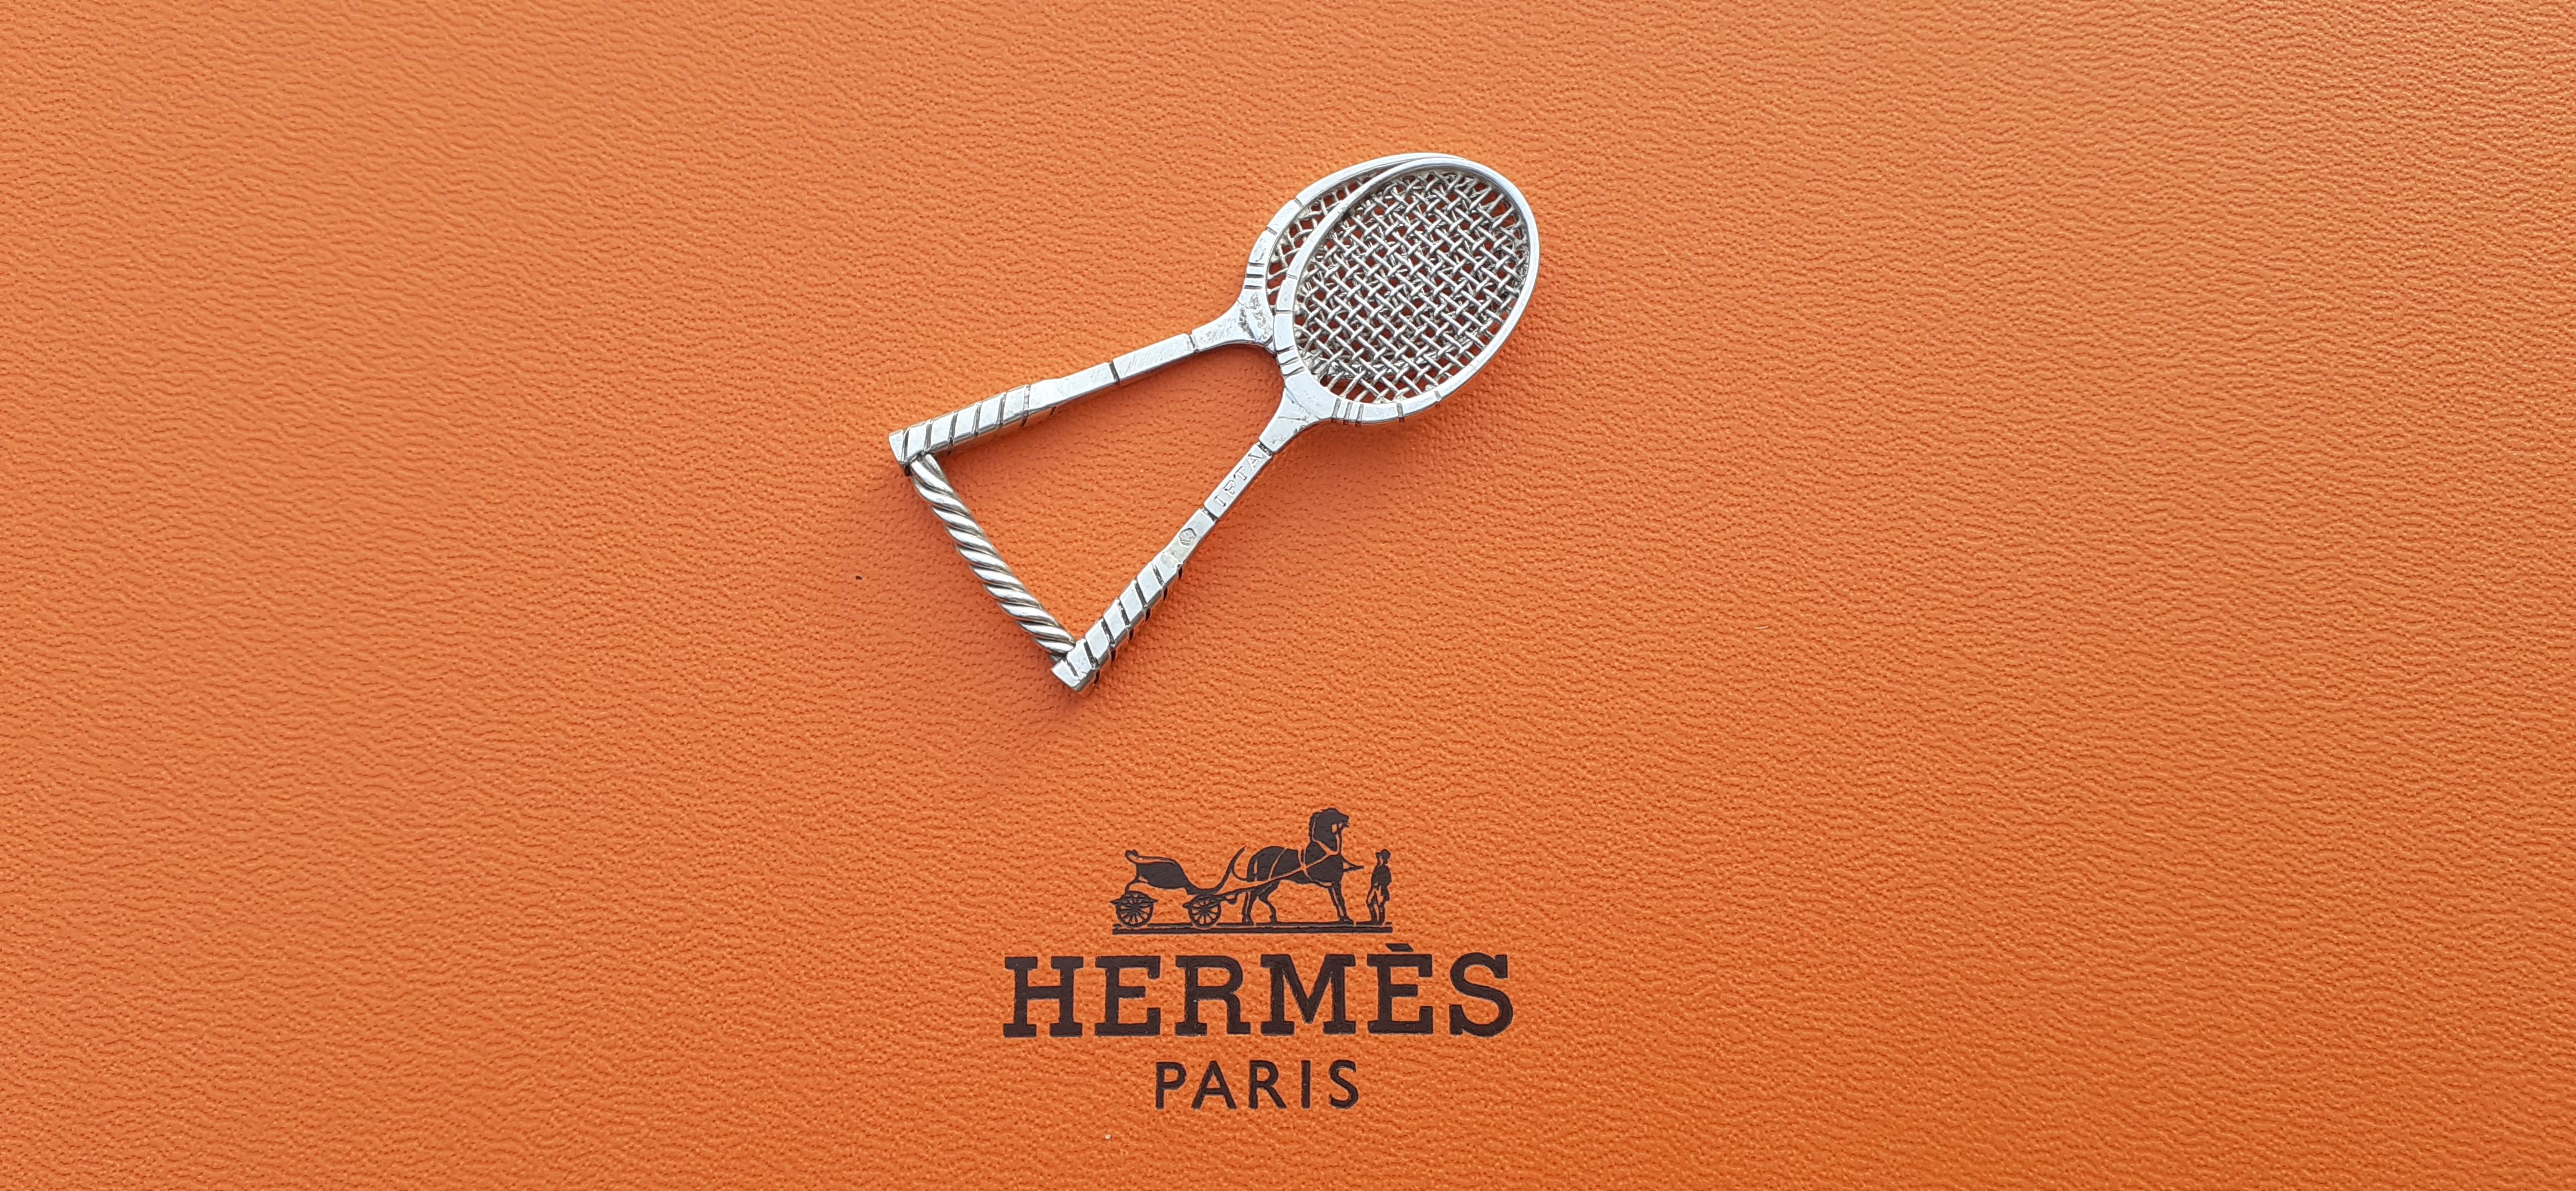 hermes tennis racket